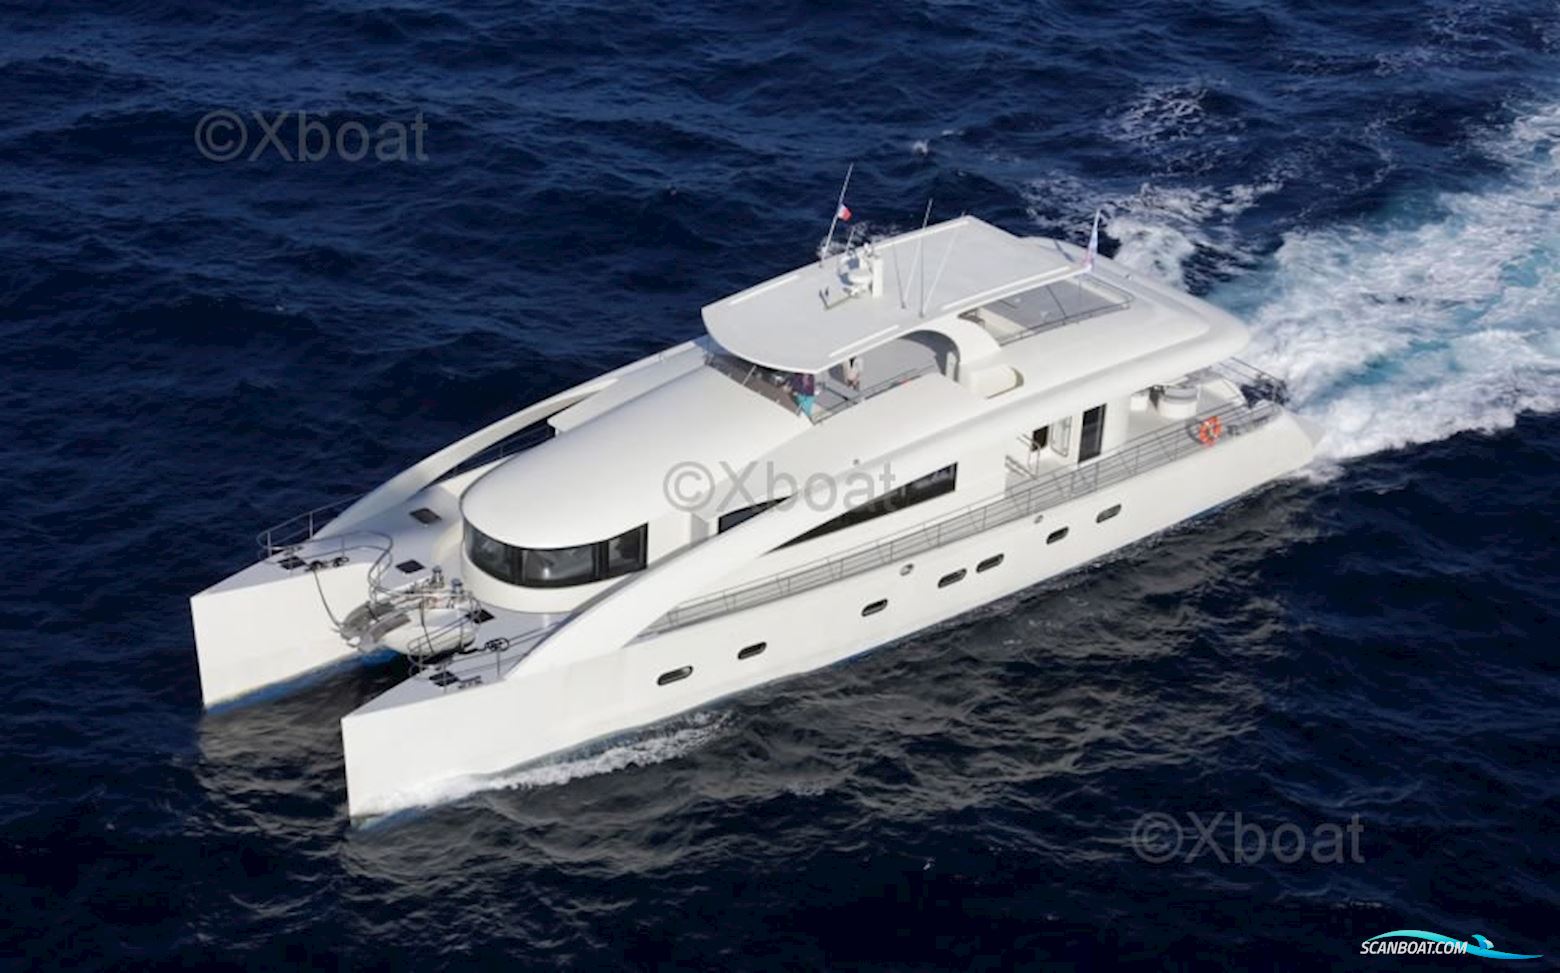 H2O Ppr Motor Yacht Catamaran 30M Motorbåt 2013, med Man motor, Frankrike